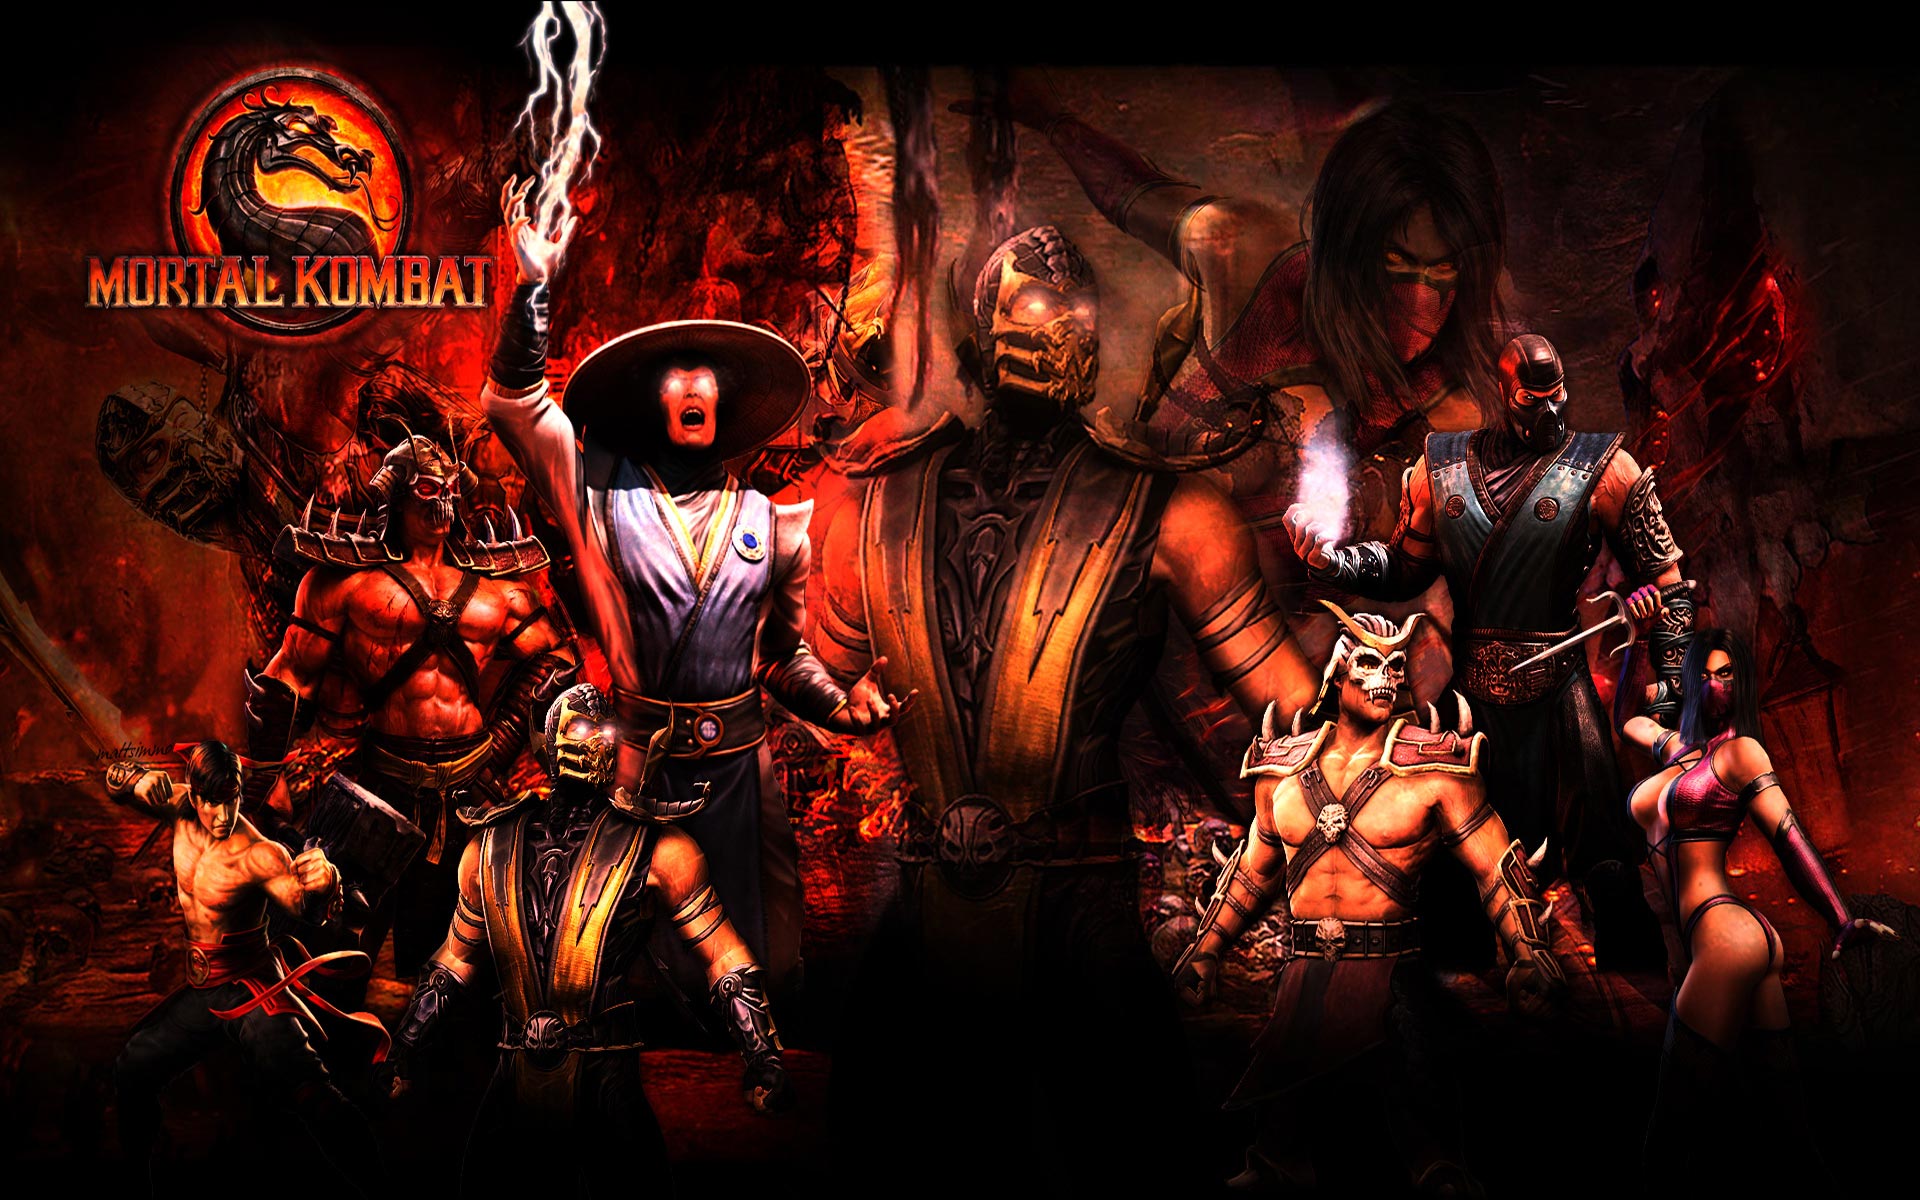 mortal kombat 9 game free download full version for pc